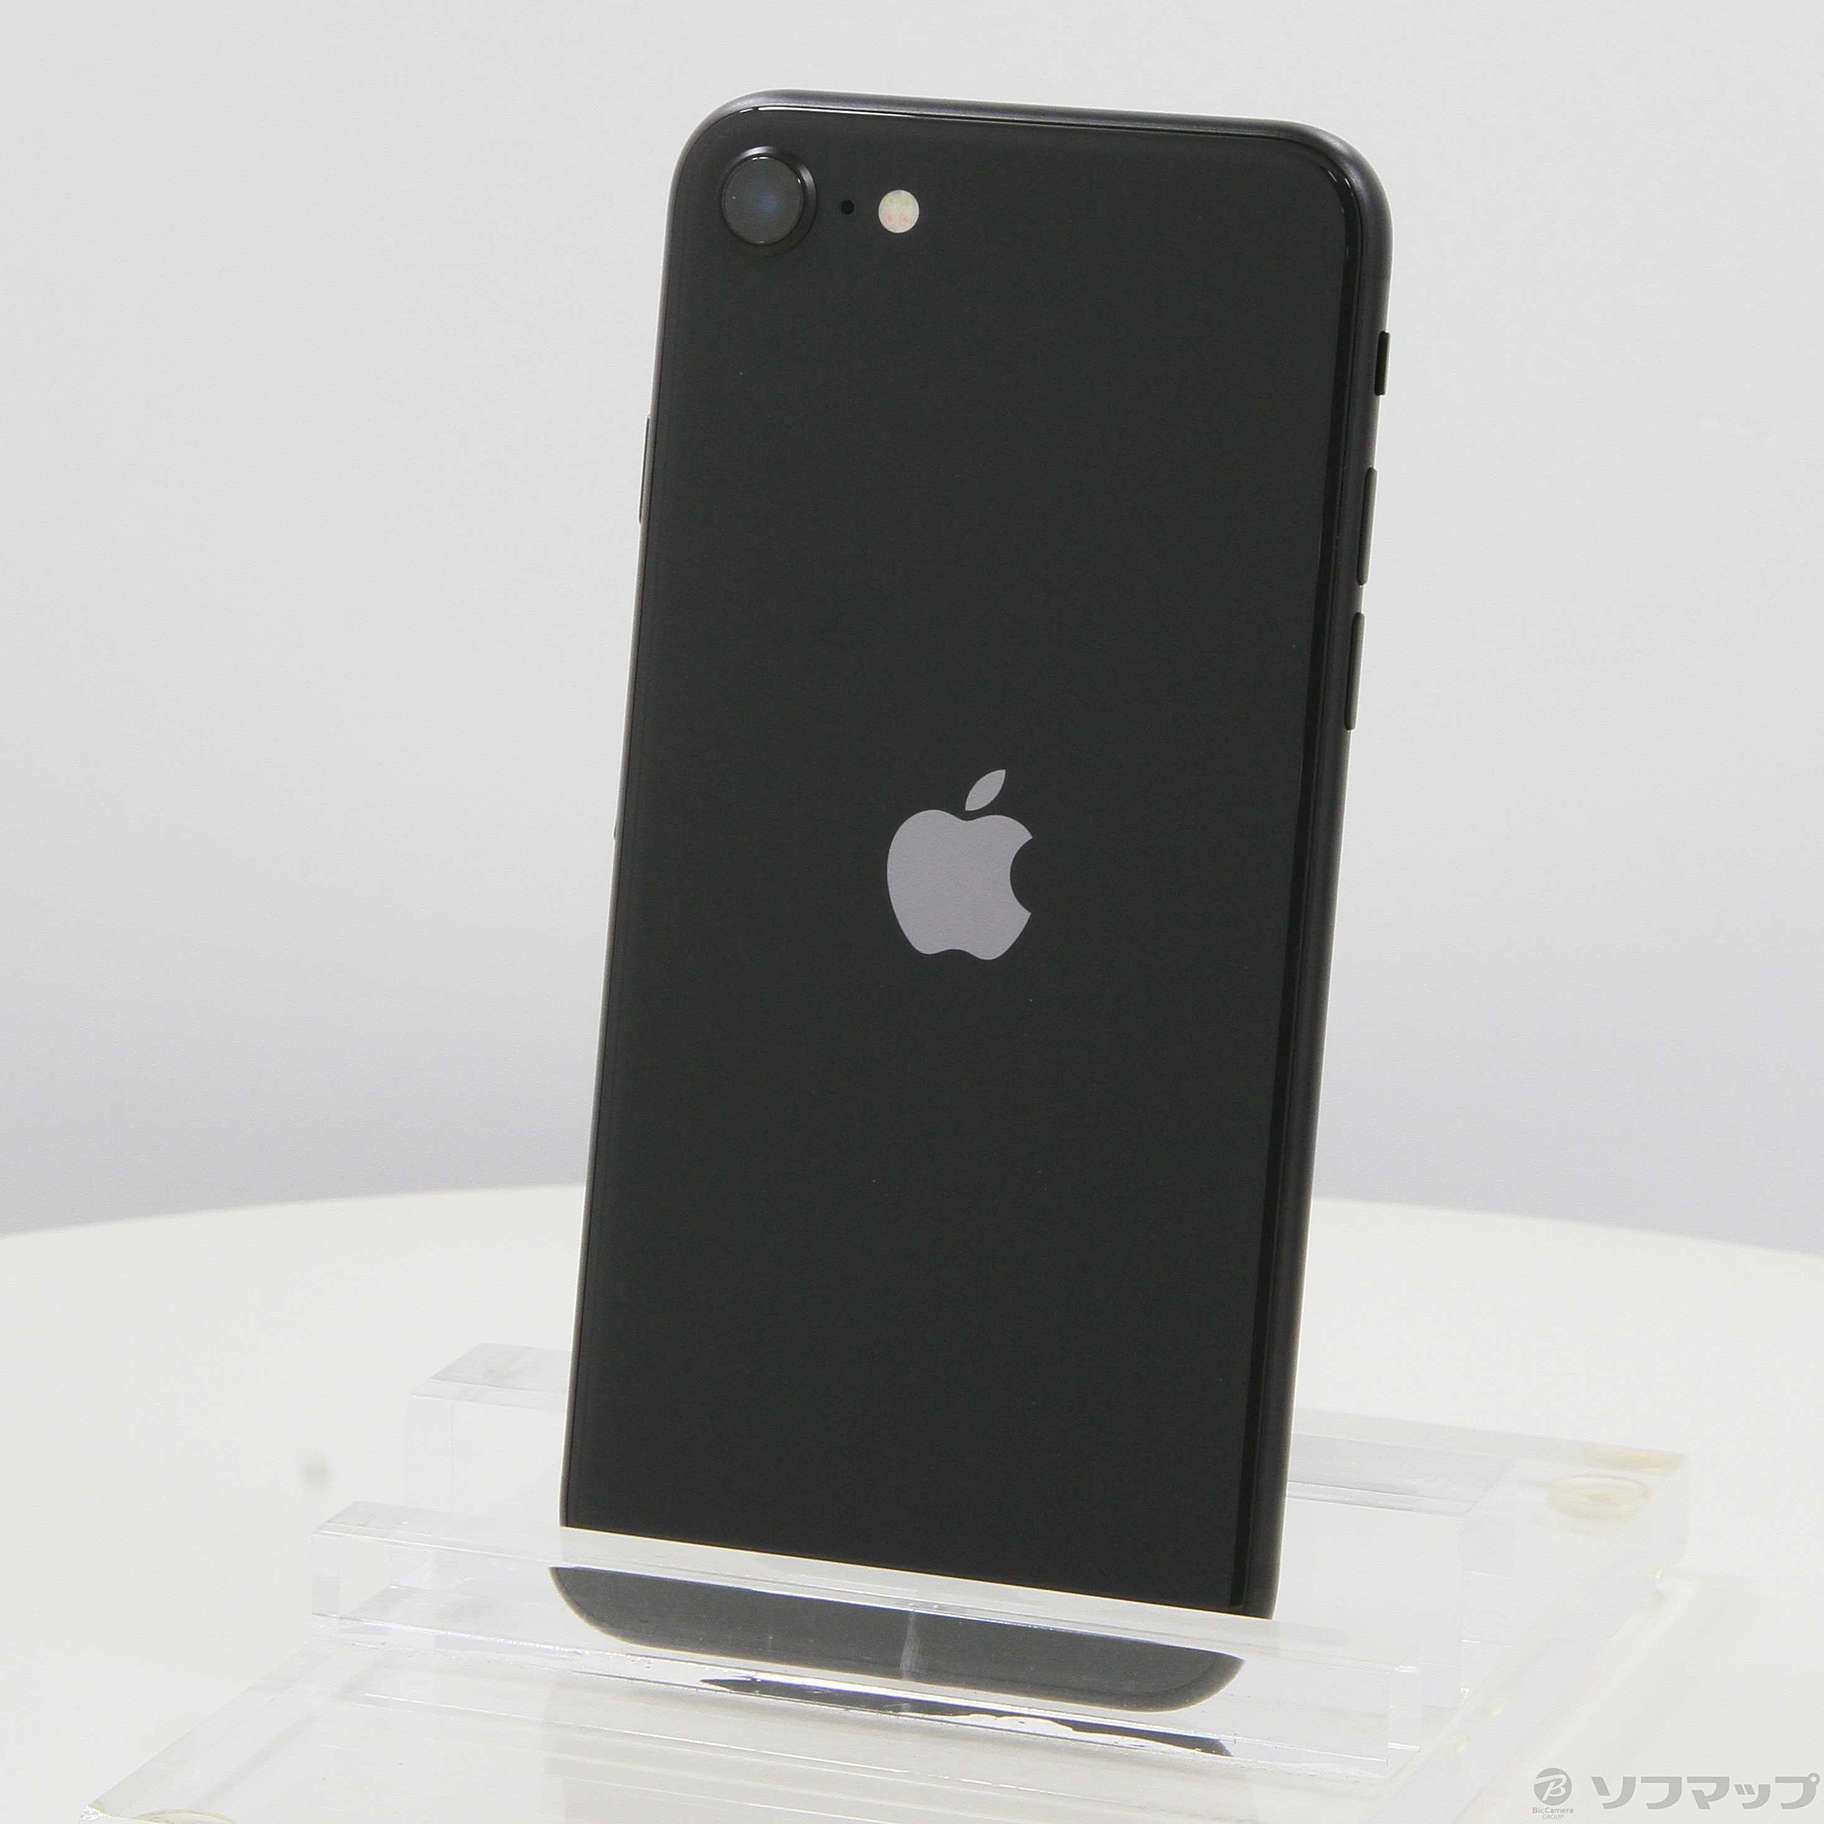 iPhone SE 第2世代 (SE2) ブラック 64GB SIMフリー